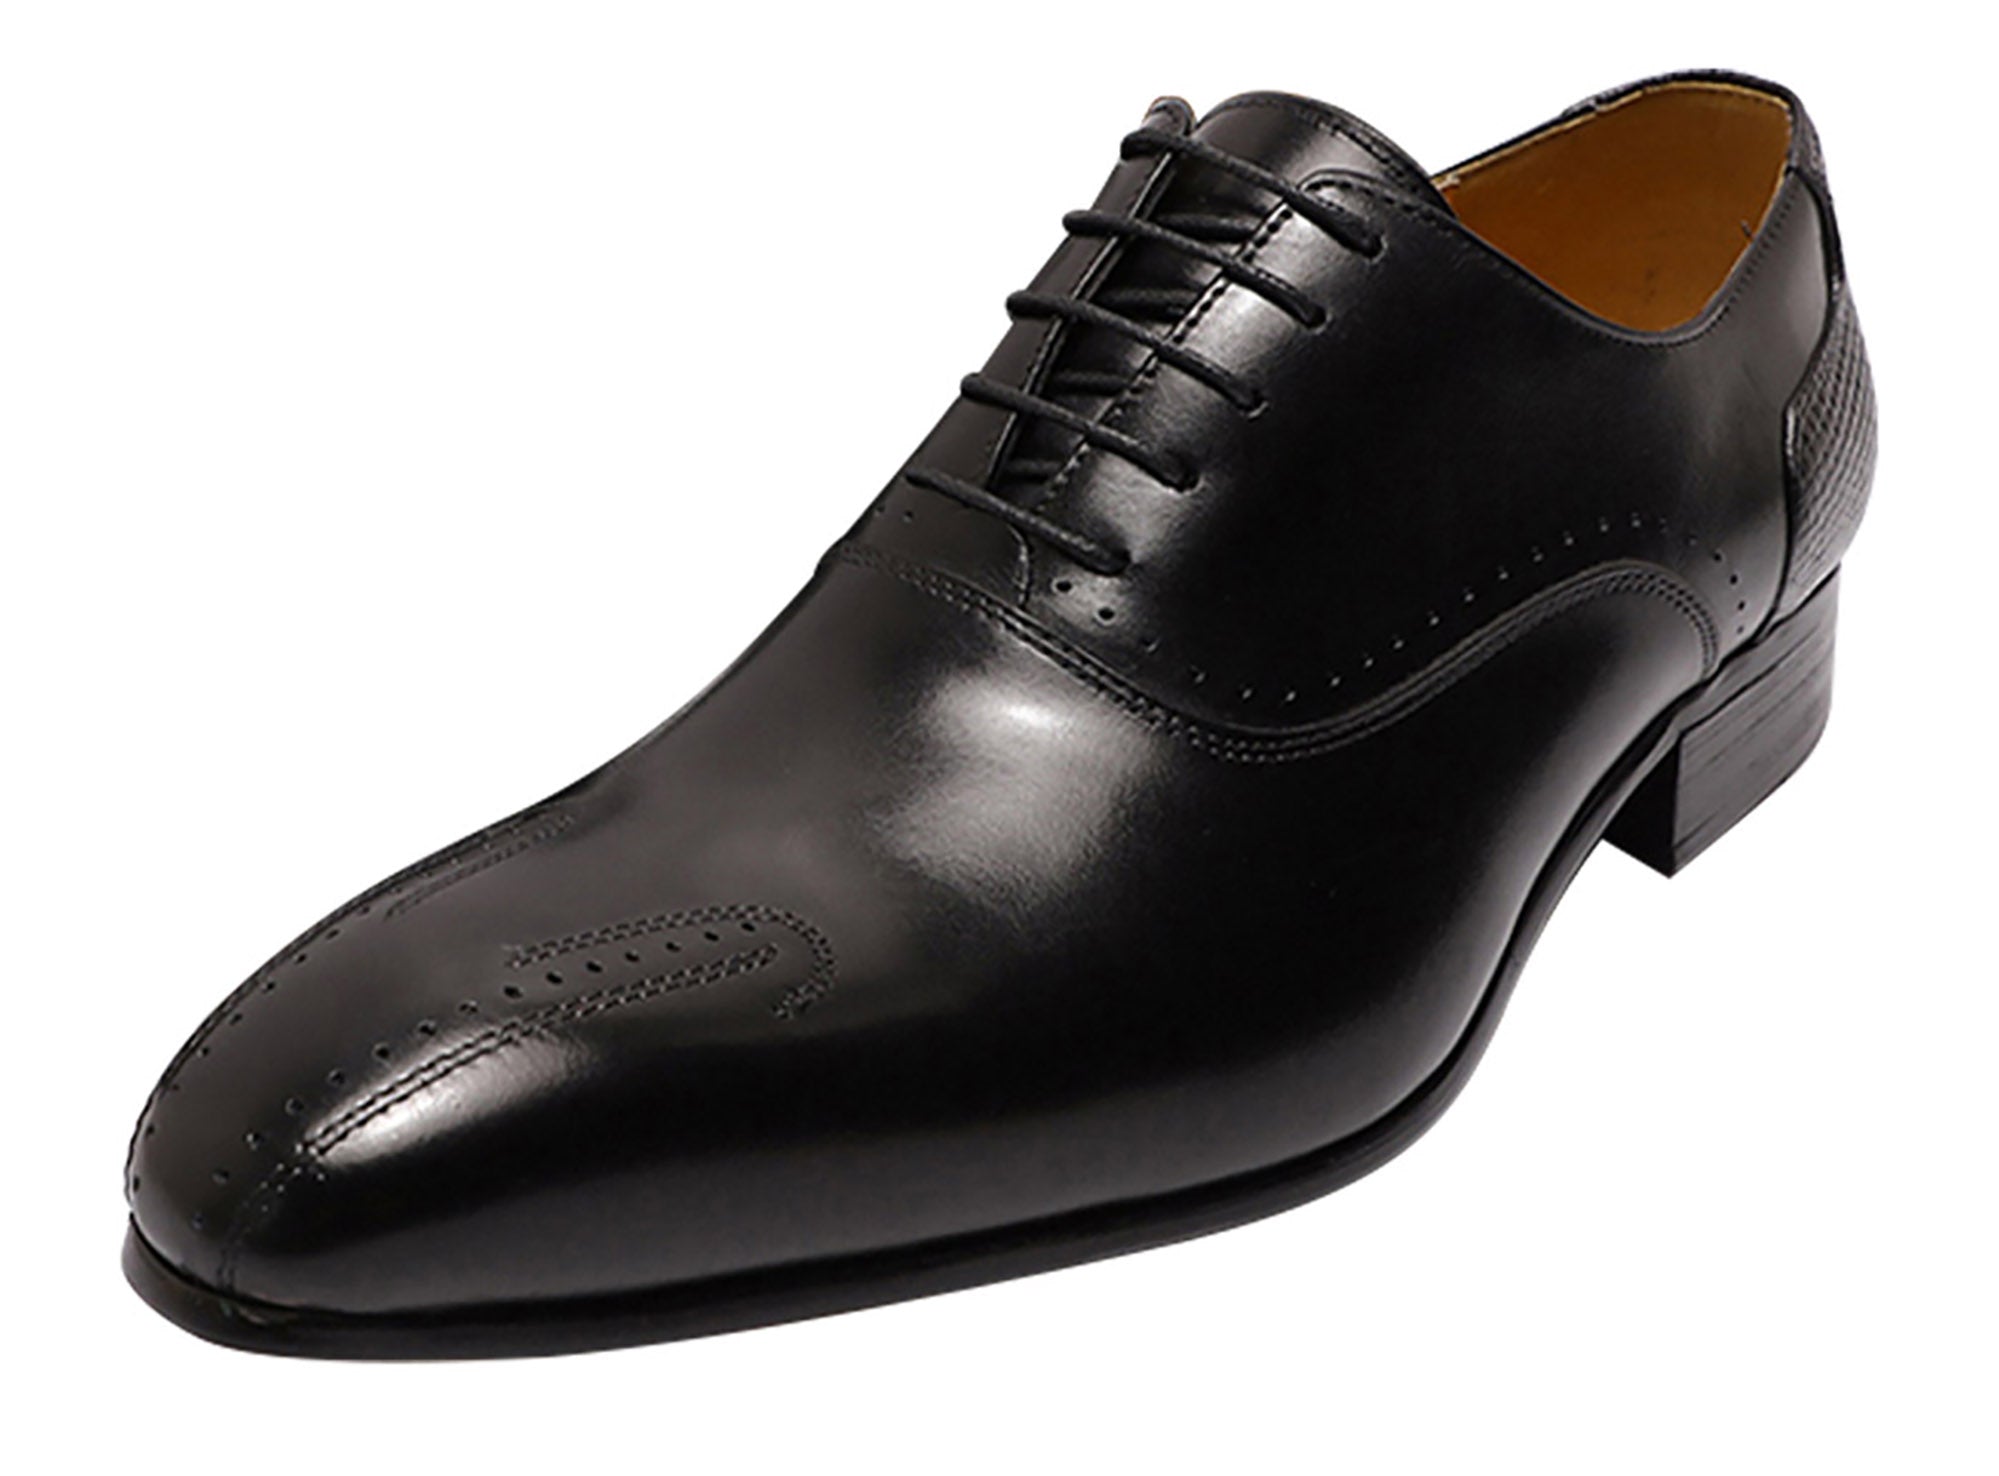 Zapatos Brogues Oxfords para hombre, zapatos formales de esmoquin